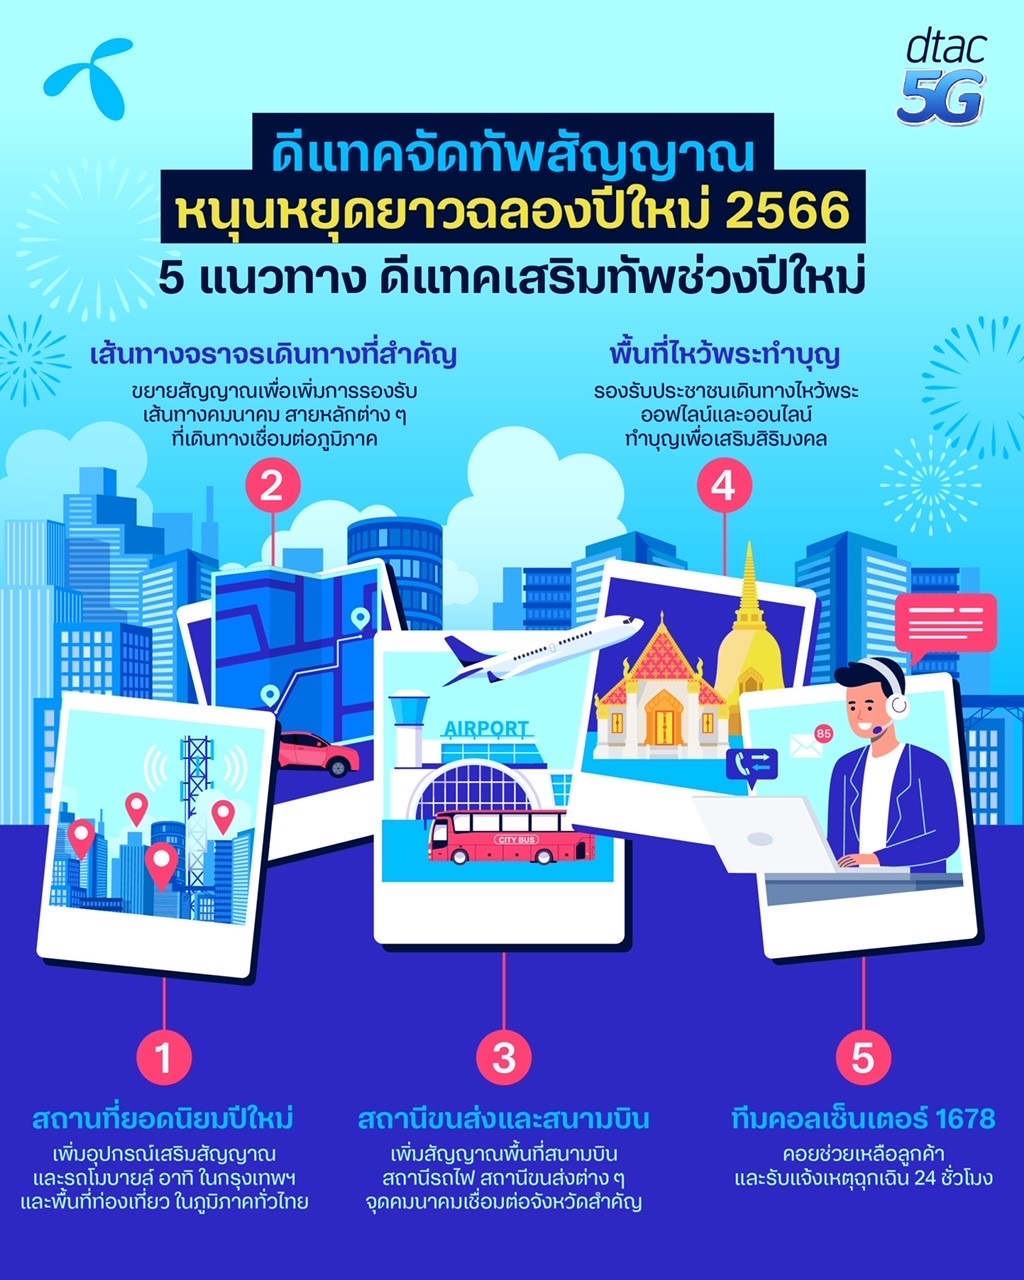 ดีแทค จัดทัพสัญญาณหนุนหยุดยาวปีใหม่ รับนักท่องเที่ยวเส้นทางเมืองหลักเมืองรองทั่วไทย